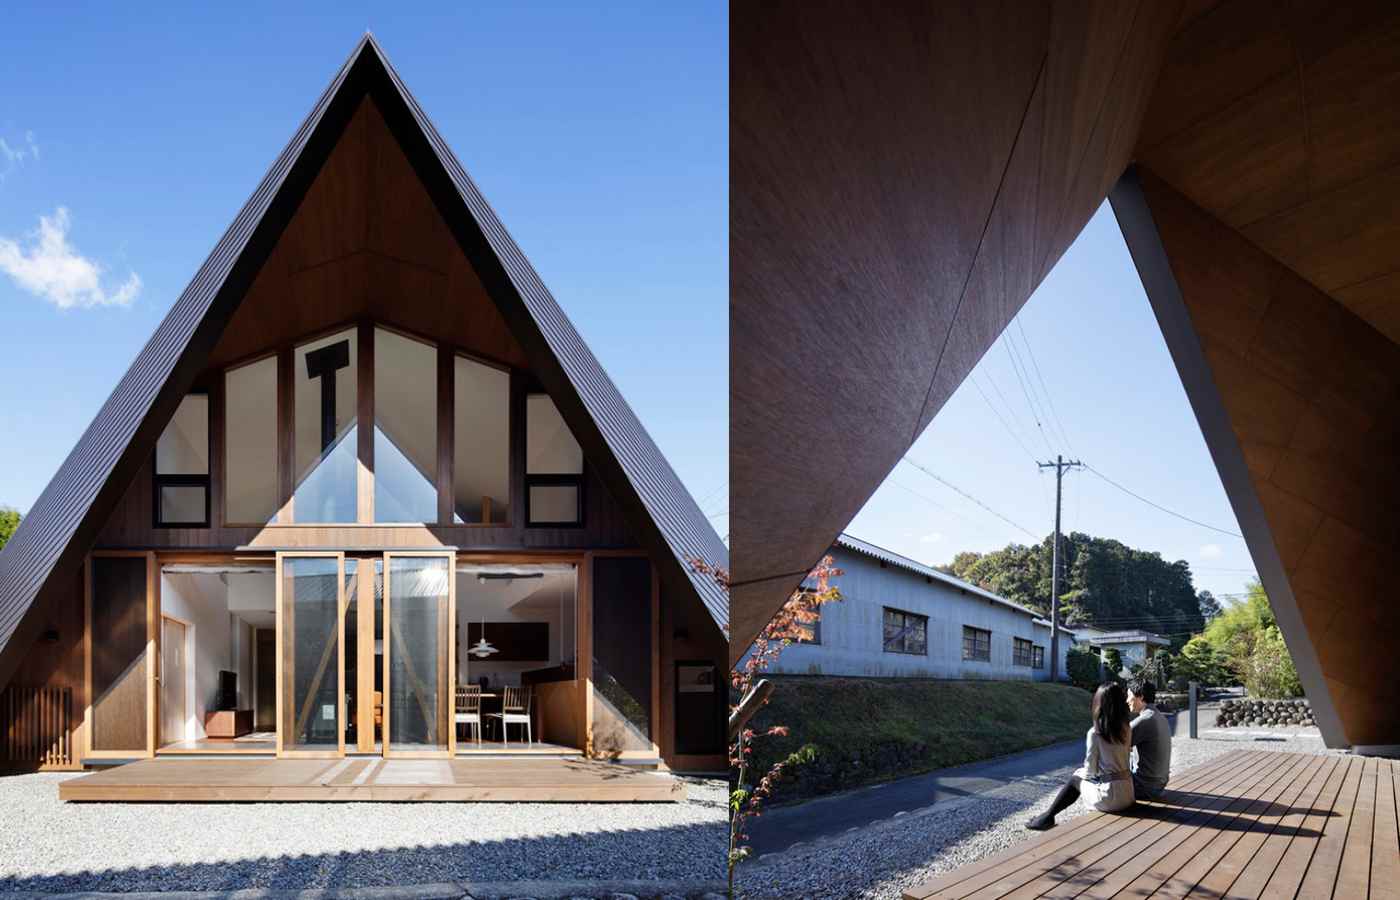 Satteldach modern interpretiert japanisches Einfamilienhaus mit Schiebetüren und eine Holzterrasse im Vorgarten